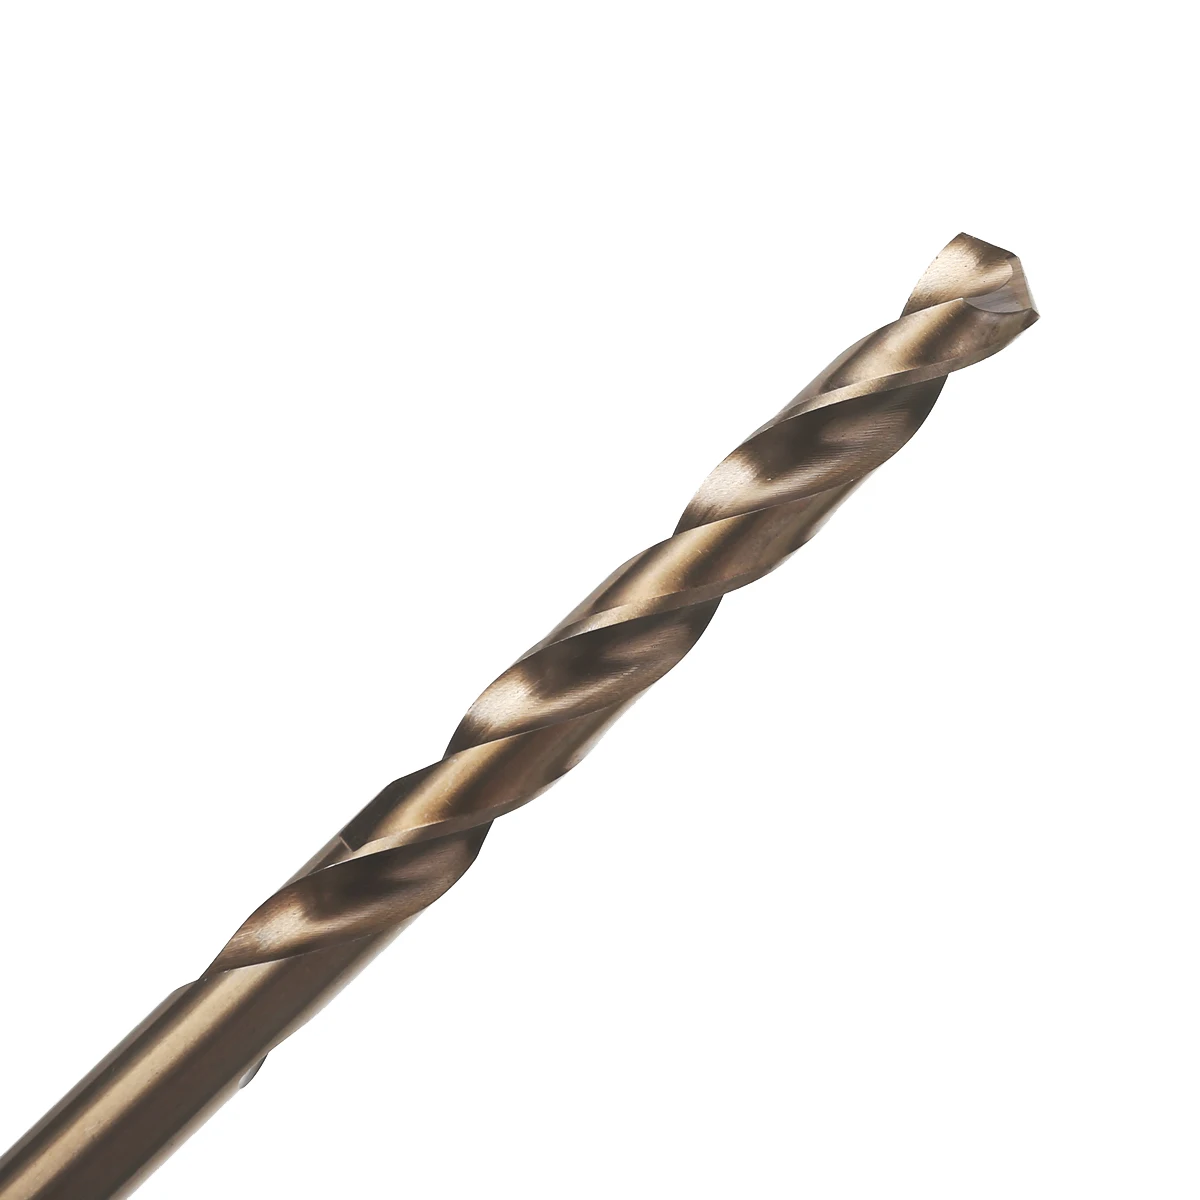 15pcs Cobalt Drill Bits For Metal Wood Working M35 HSS Steel Straight Shank 1.5-10mm Twist Drill Bit Power Tools Mayitr